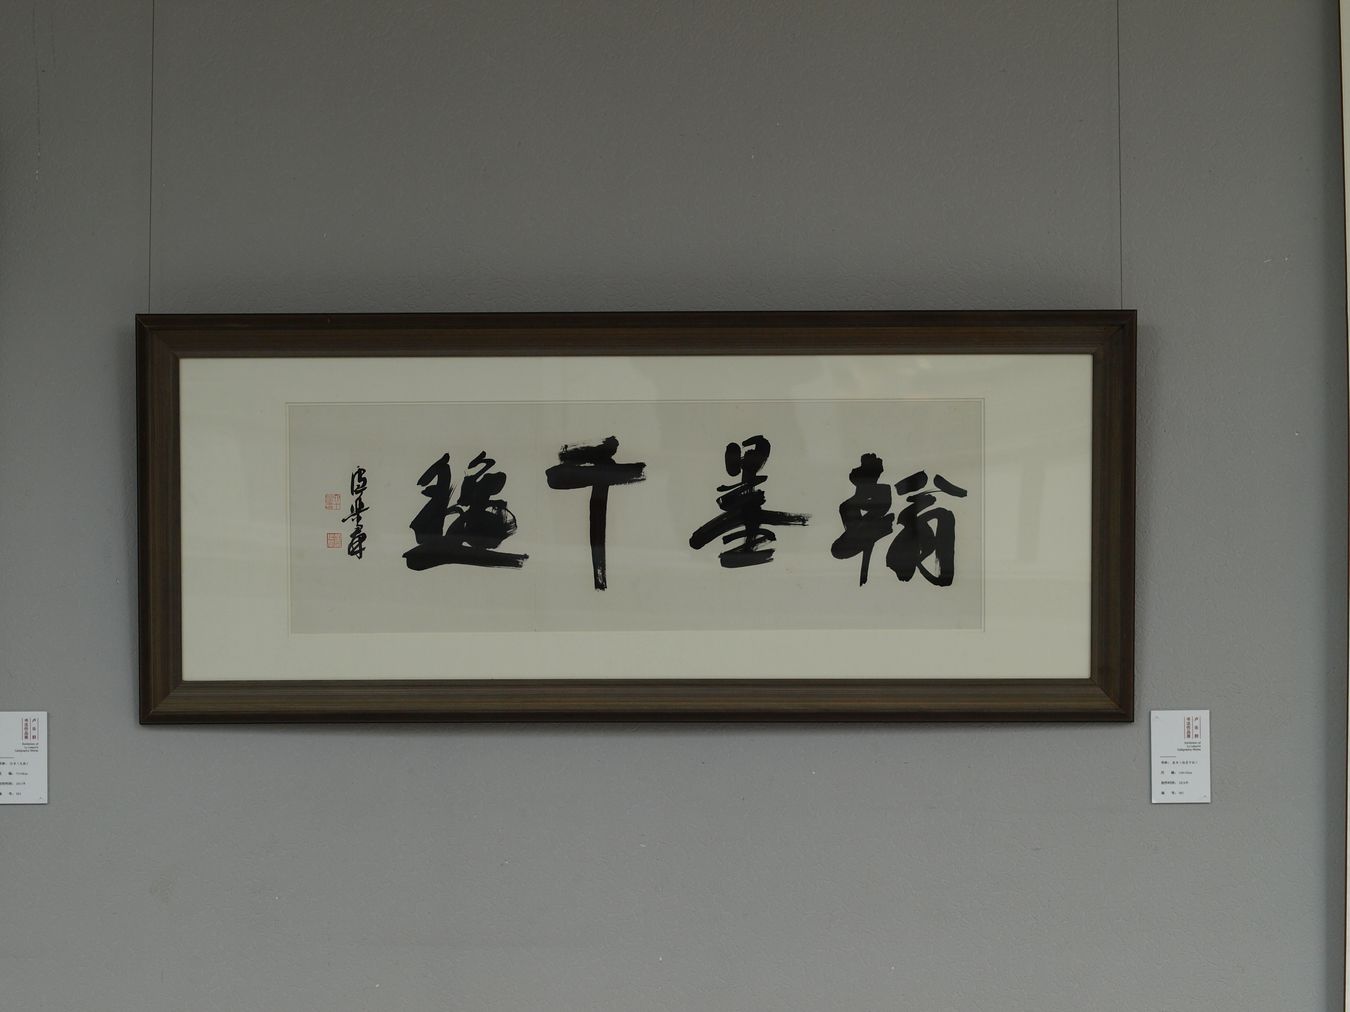 陆维钊书画院建院20周年系列活动之一“卢乐群书法展”在李叔同纪念馆举办 (9).jpg